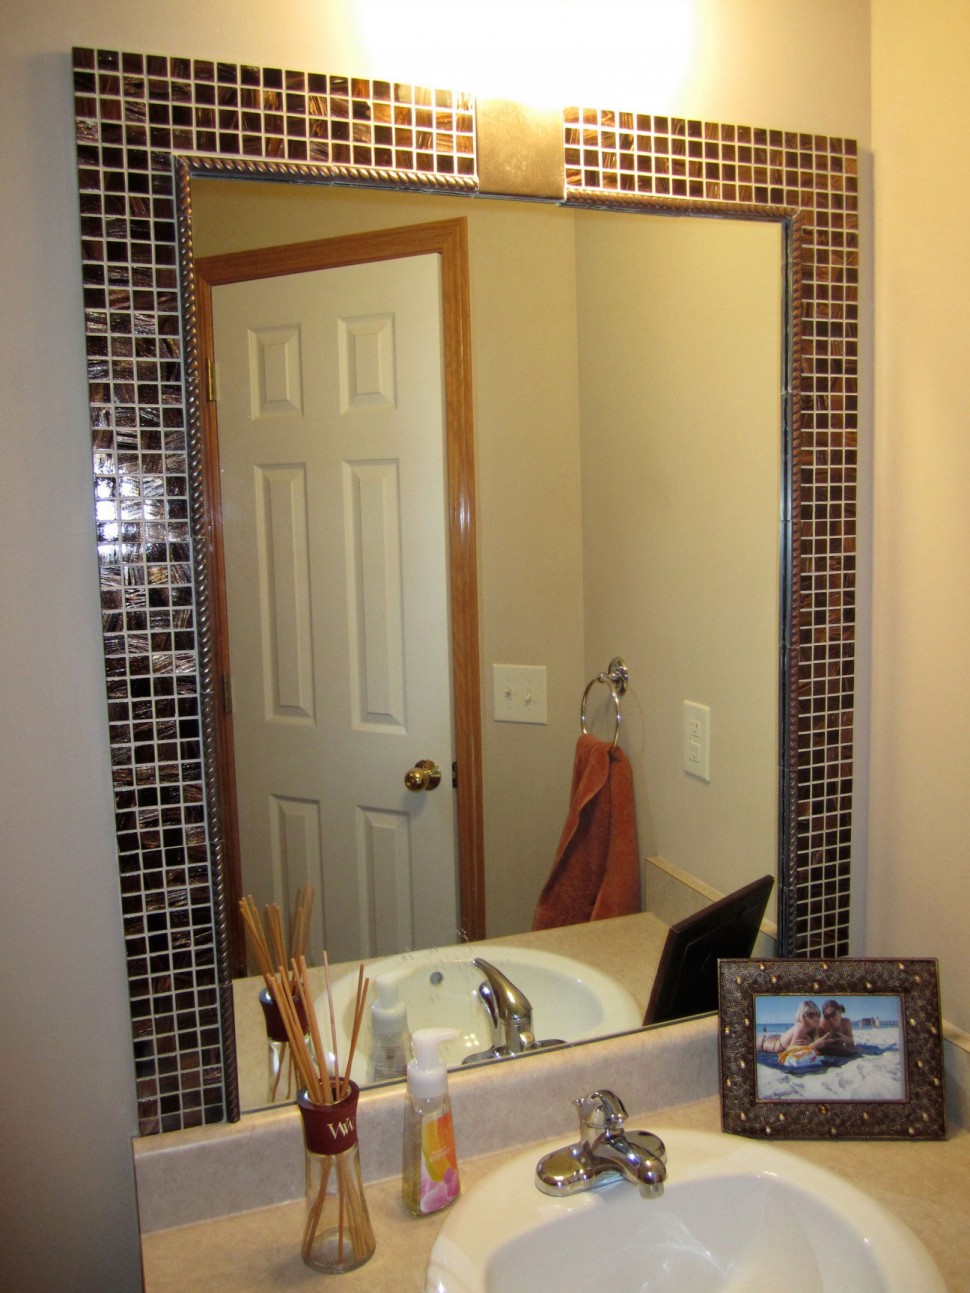 Minimalist Bathroom Mirrors Design Ideas to Create Sweet Splash Simply Ideas 4 Homes